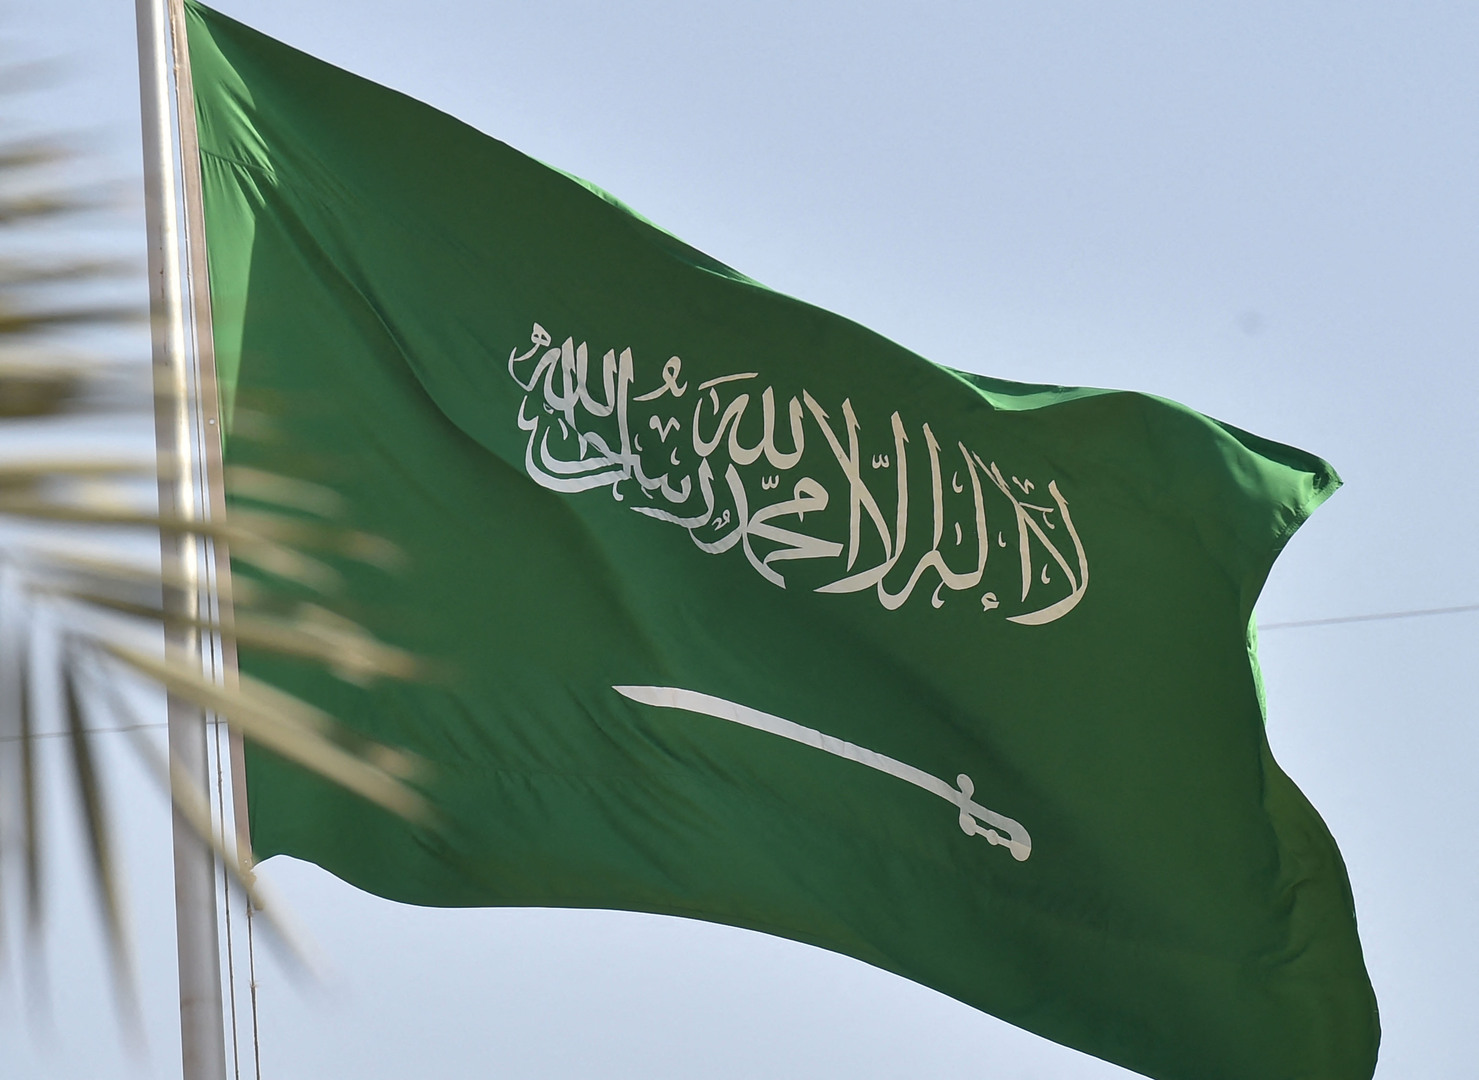 شاهد هكذا كان علم السعودية ايام الملك عبدالعزيز .. شاهد الفرق بينه وبين العلم الحالي للمملكة !